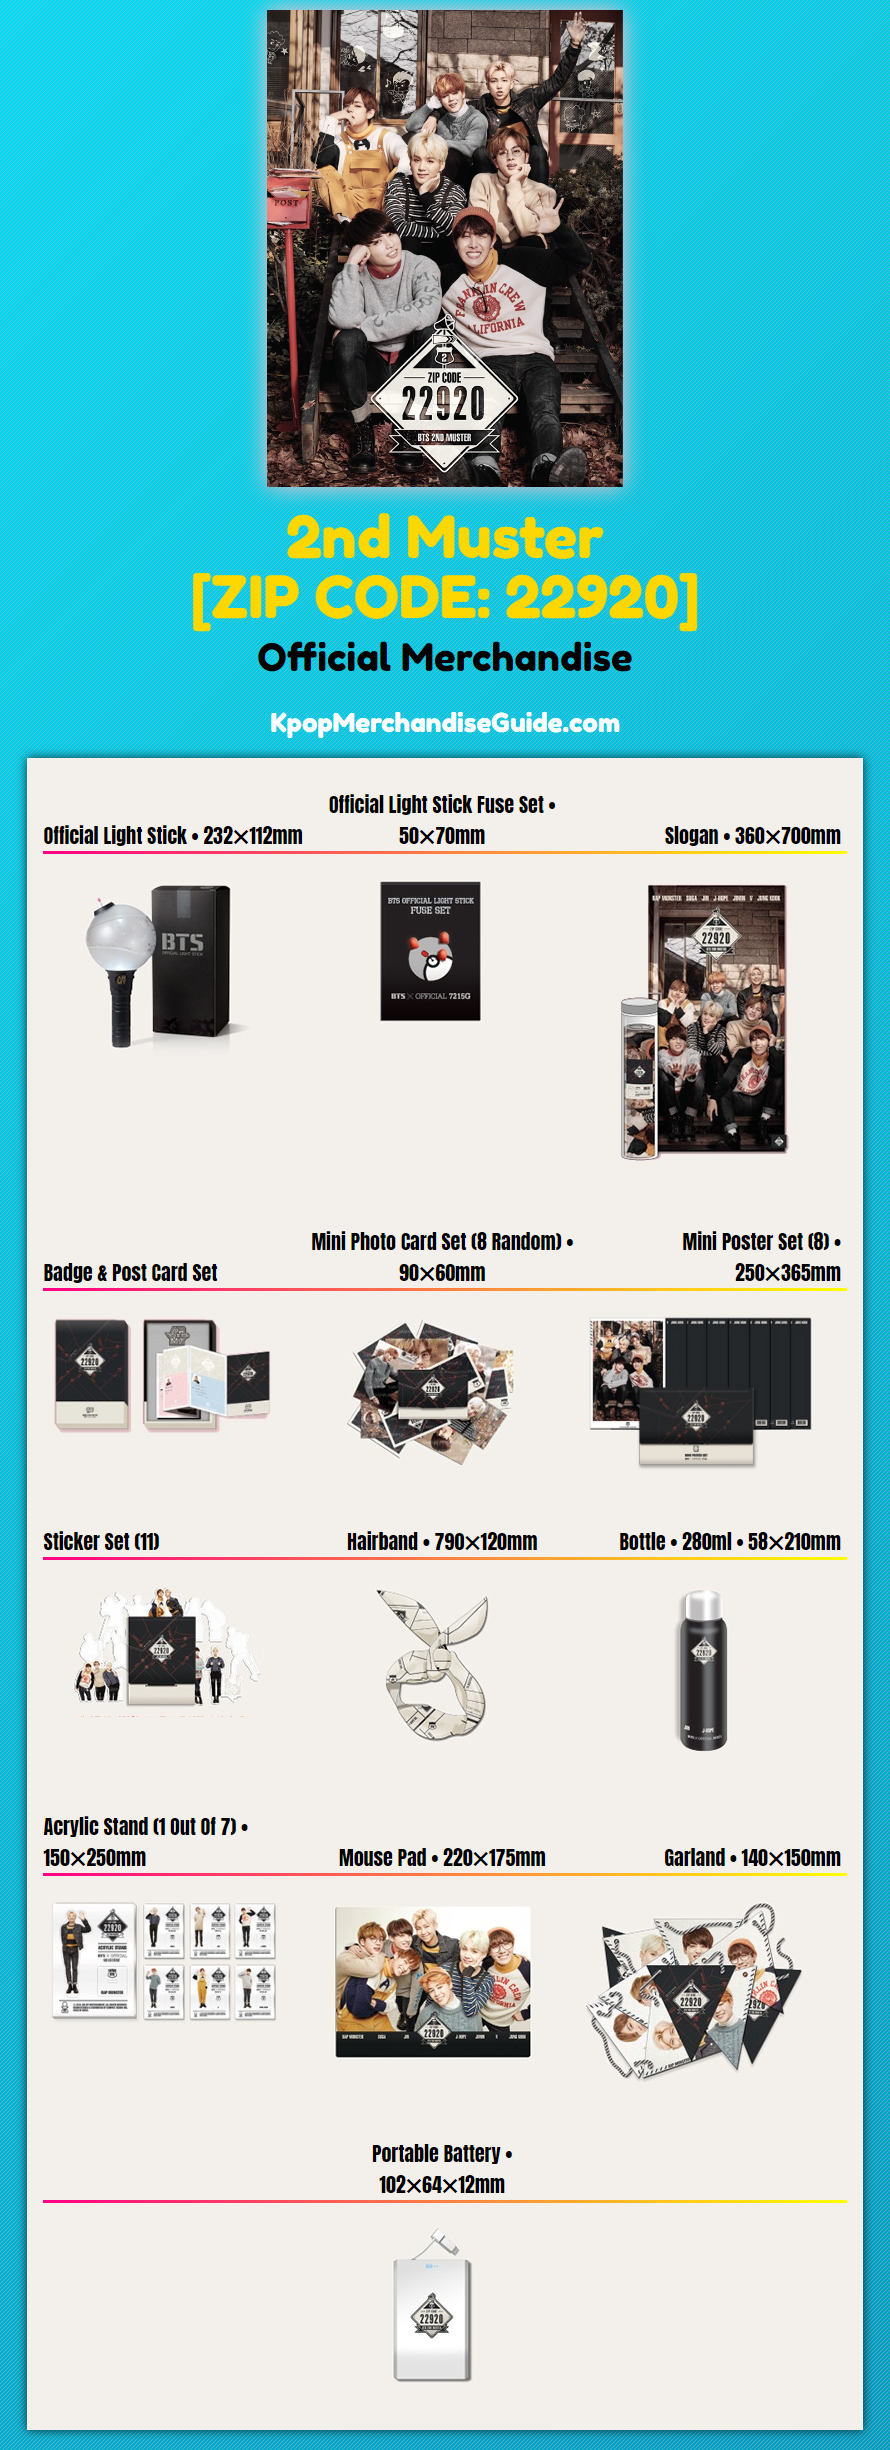 BTS 2nd Muster: [ZIP CODE: 22920] Merchandise